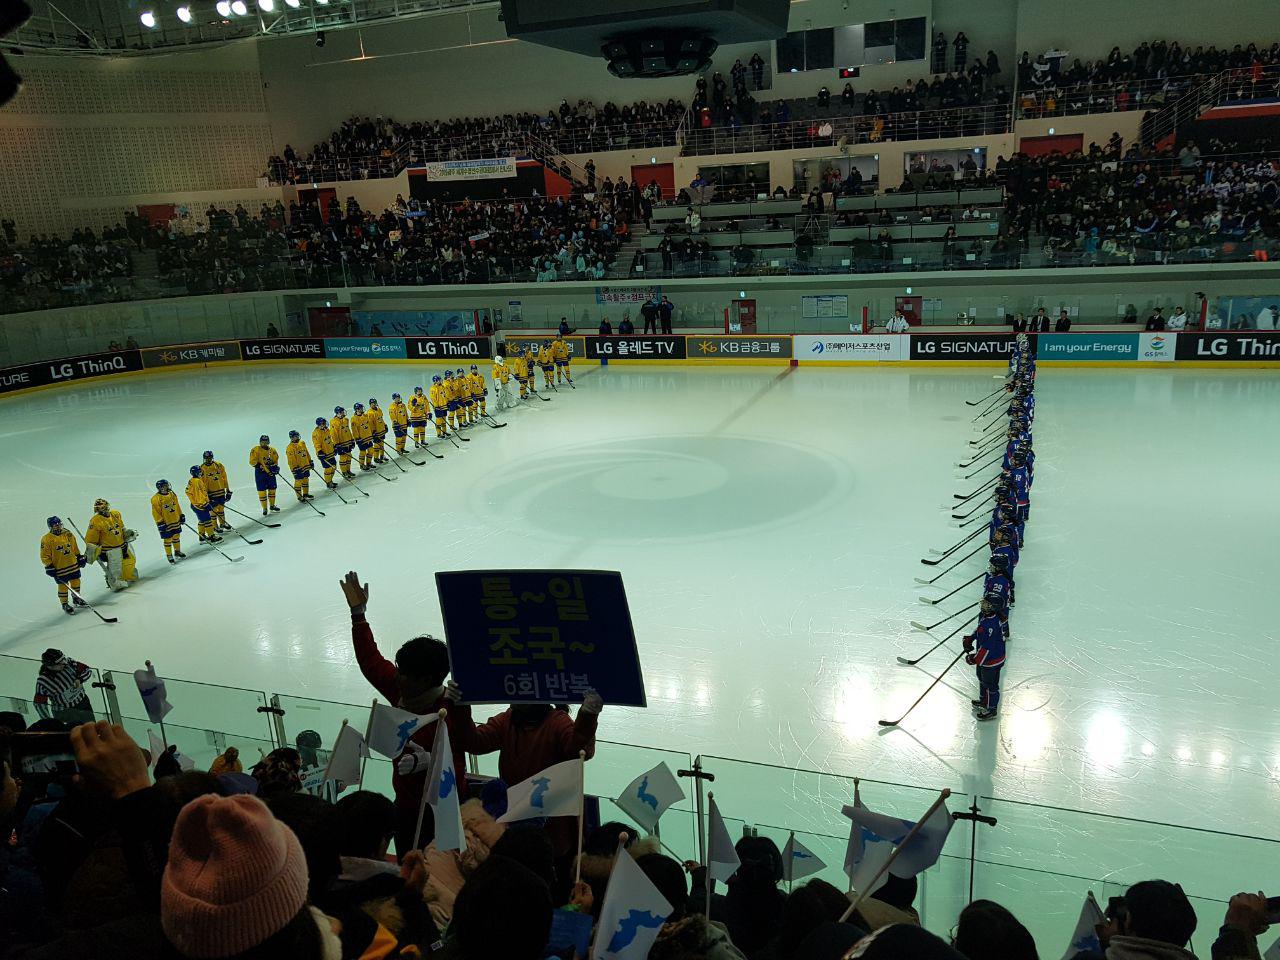 평창겨울올림픽을 앞두고 남북 여자아이스하키 단일팀과 스웨덴의 평가전이 열린 선학 국제빙상경기장의 모습. 양 팀 선수들이 경기 시작을 앞두고 마주 서 있다.